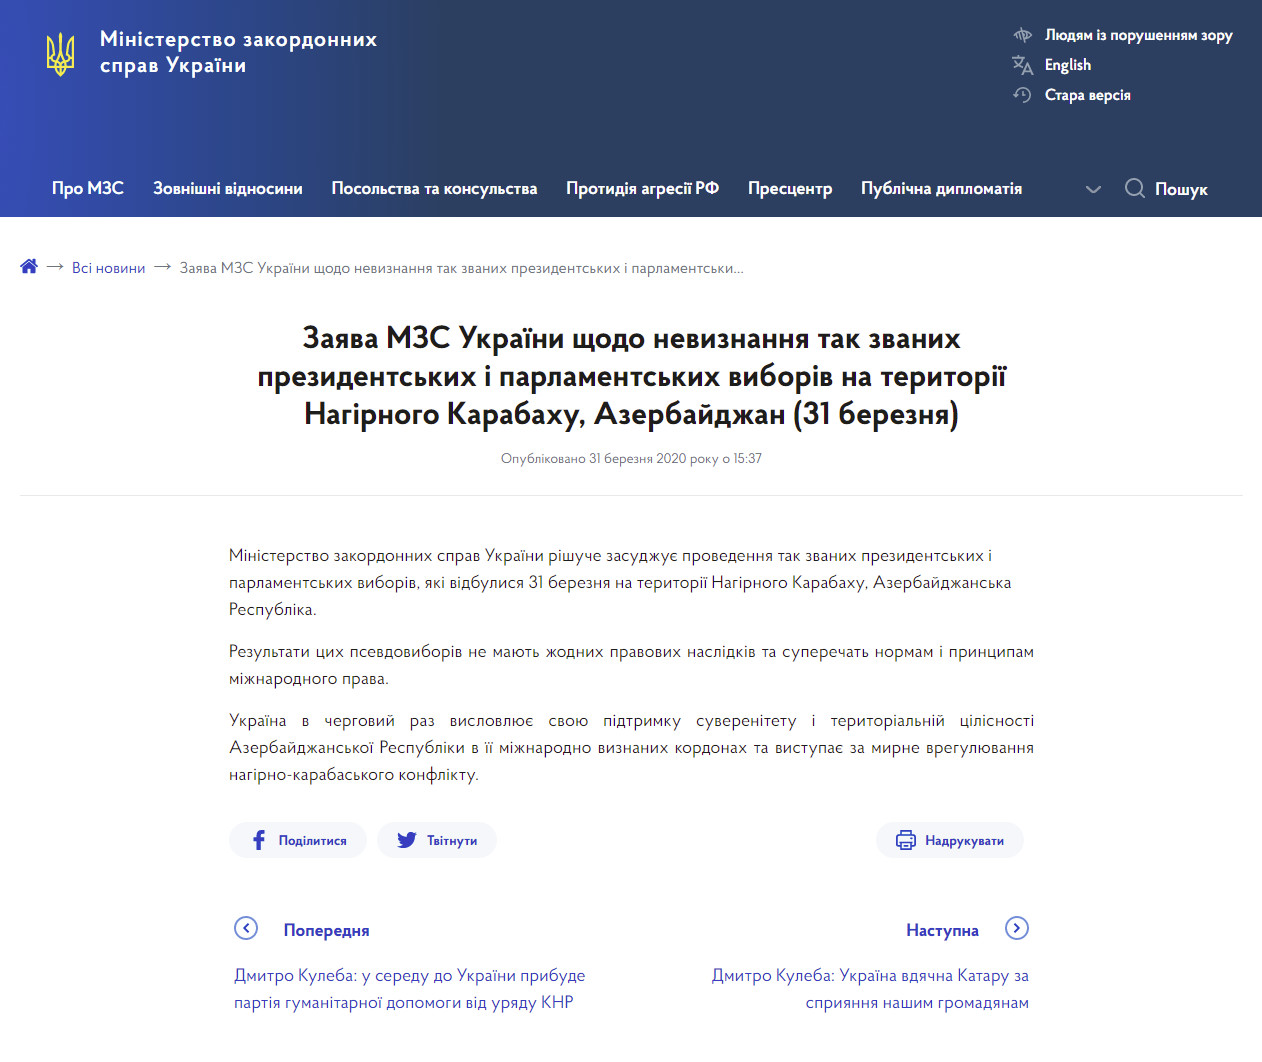 https://mfa.gov.ua/news/zayava-mzs-ukrayini-shchodo-neviznannya-tak-zvanih-prezidentskih-i-parlamentskih-viboriv-na-teritoriyi-nagirnogo-karabahu-azerbajdzhan-31-bereznya